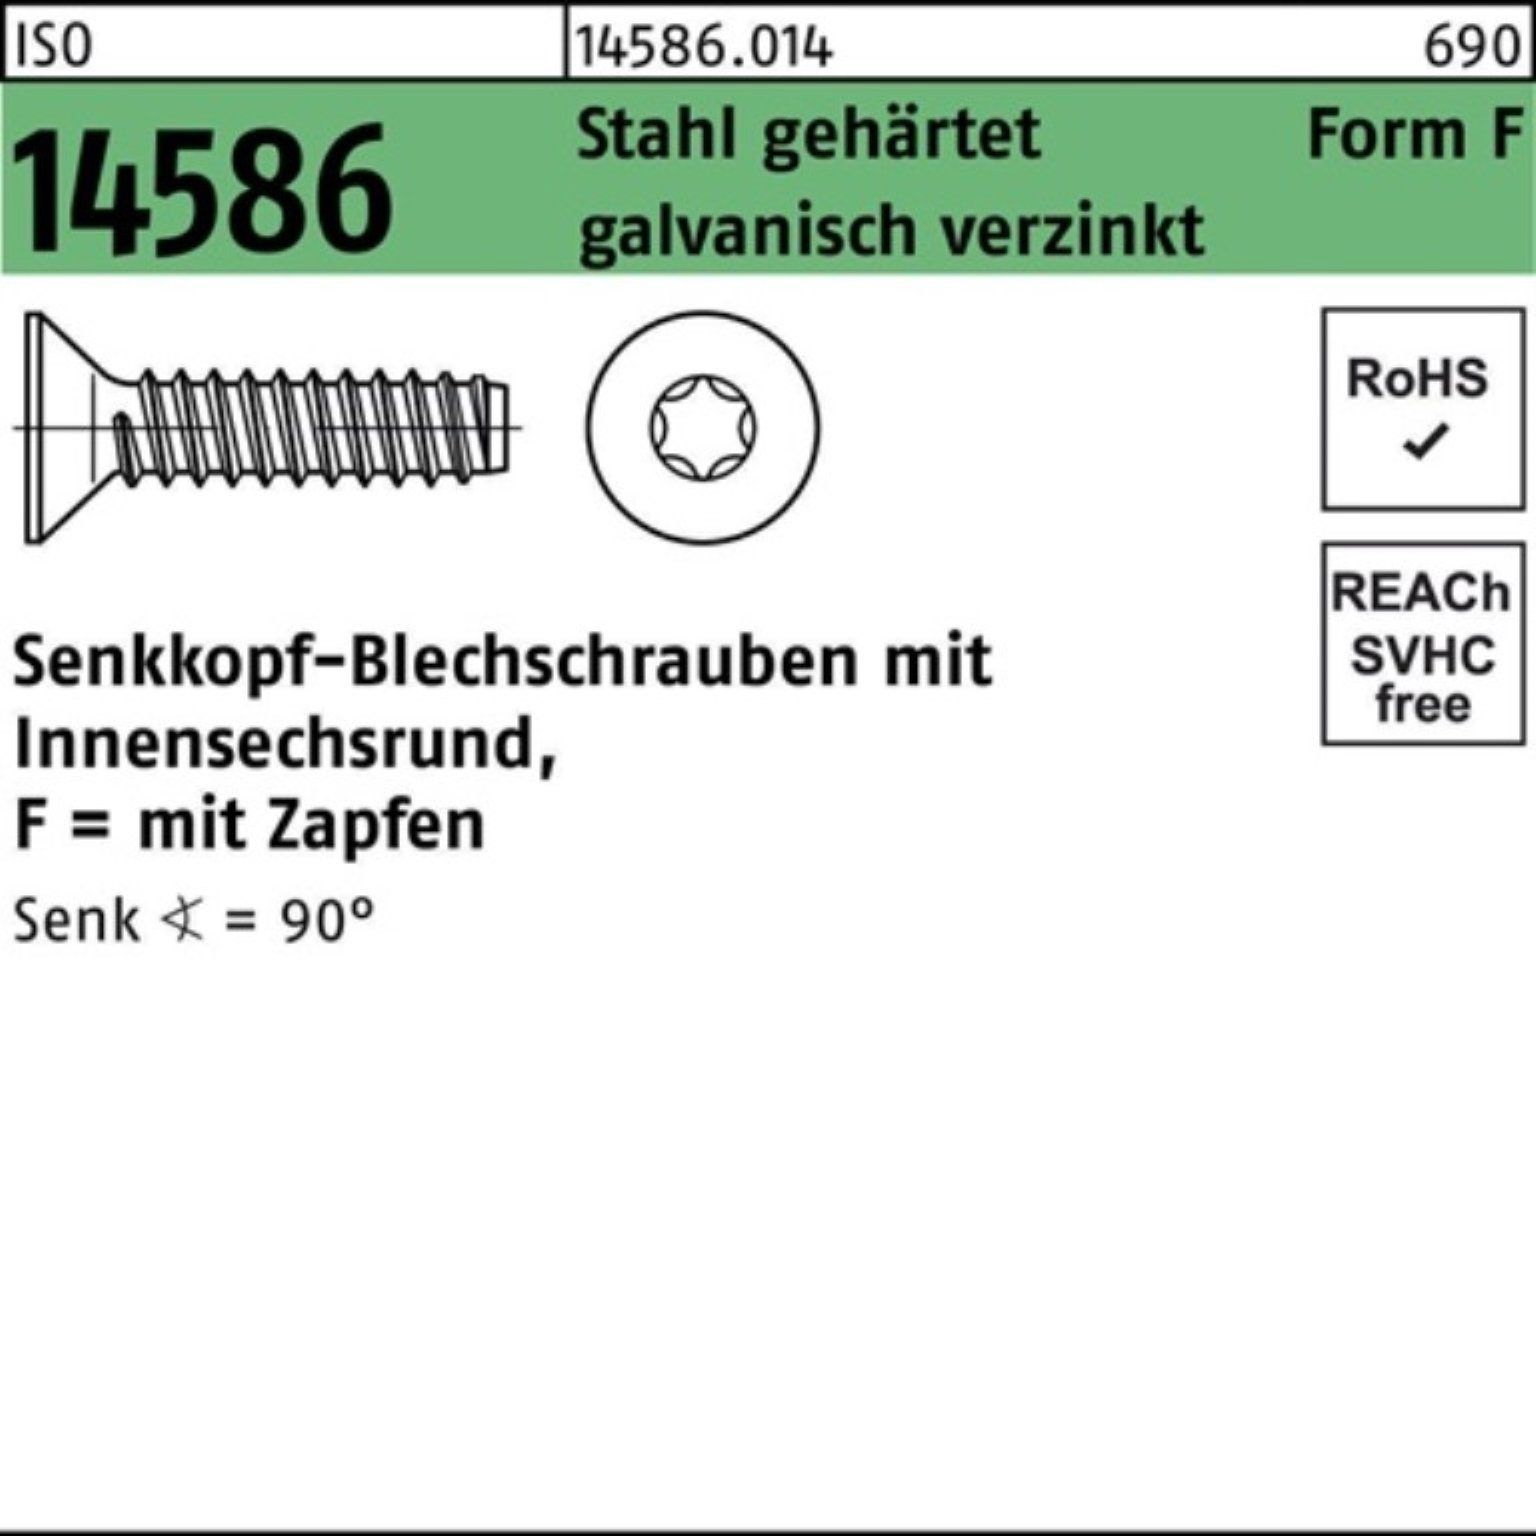 Reyher Schraube 1000er Pack ISO -F 4,2x9,5 Stahl ge ISR/Zapfen Senkblechschraube 14586